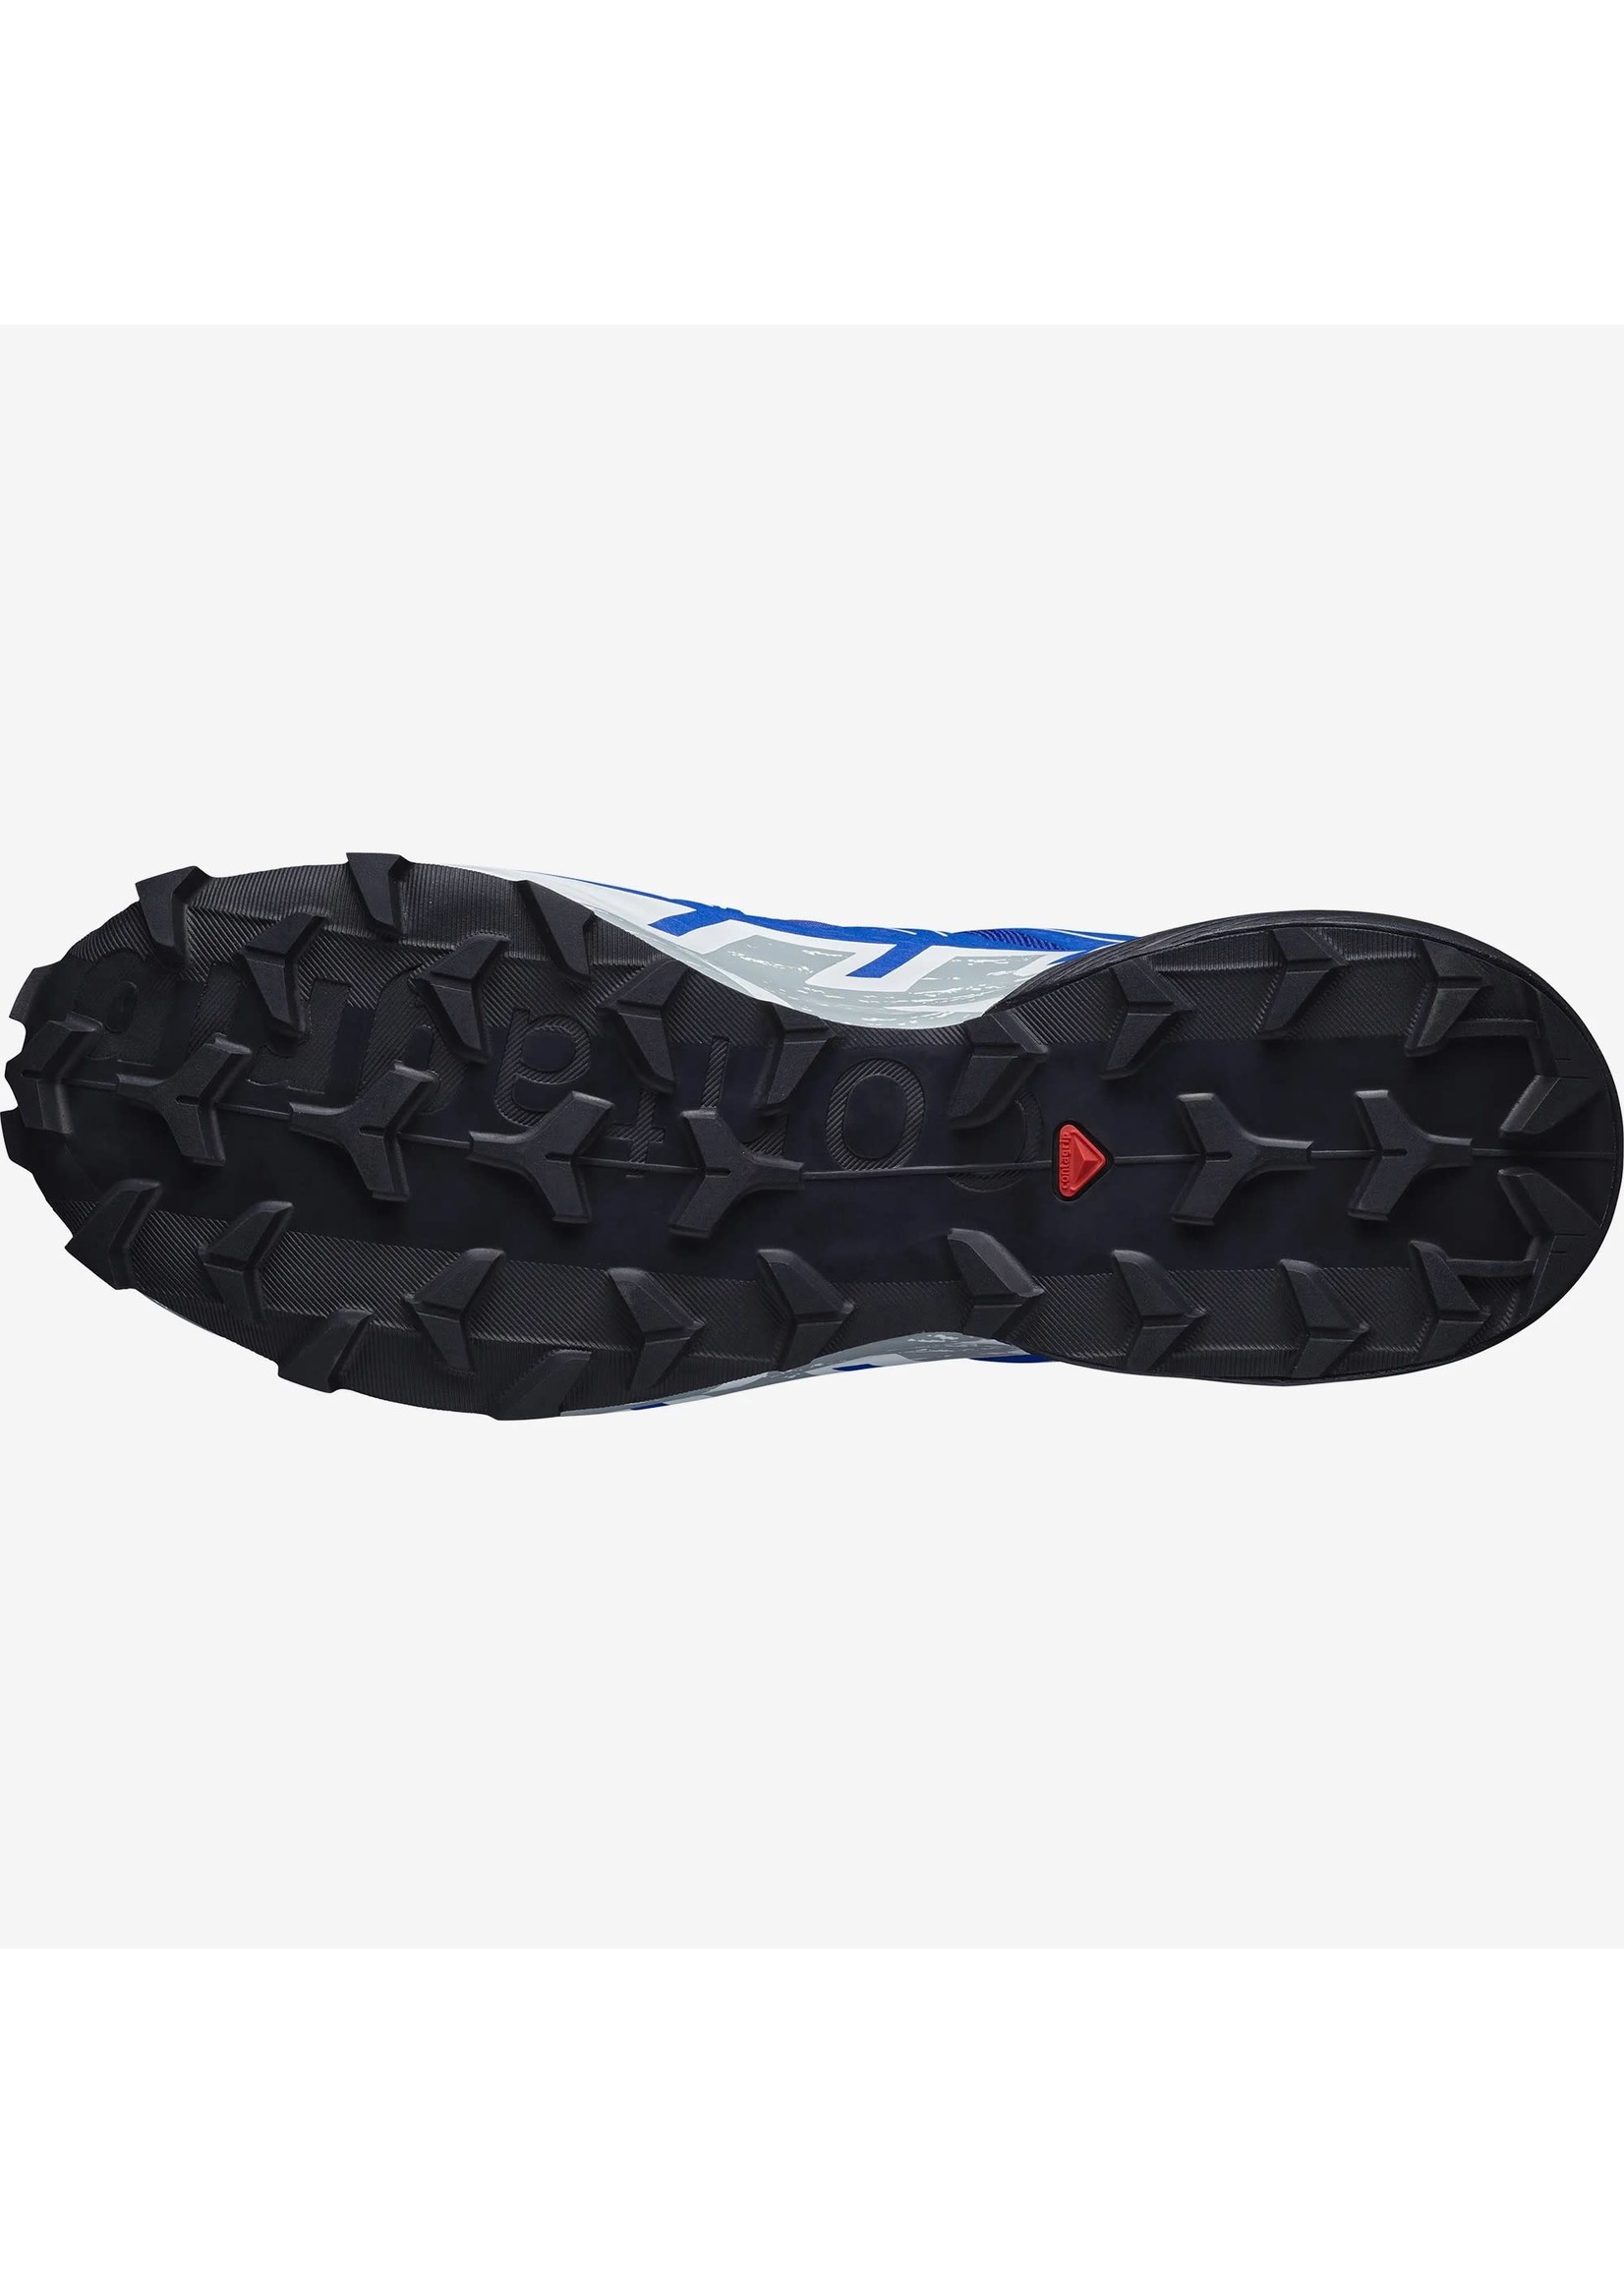 SALOMON Speedcross 6 GTX (souliers de course pour homme)